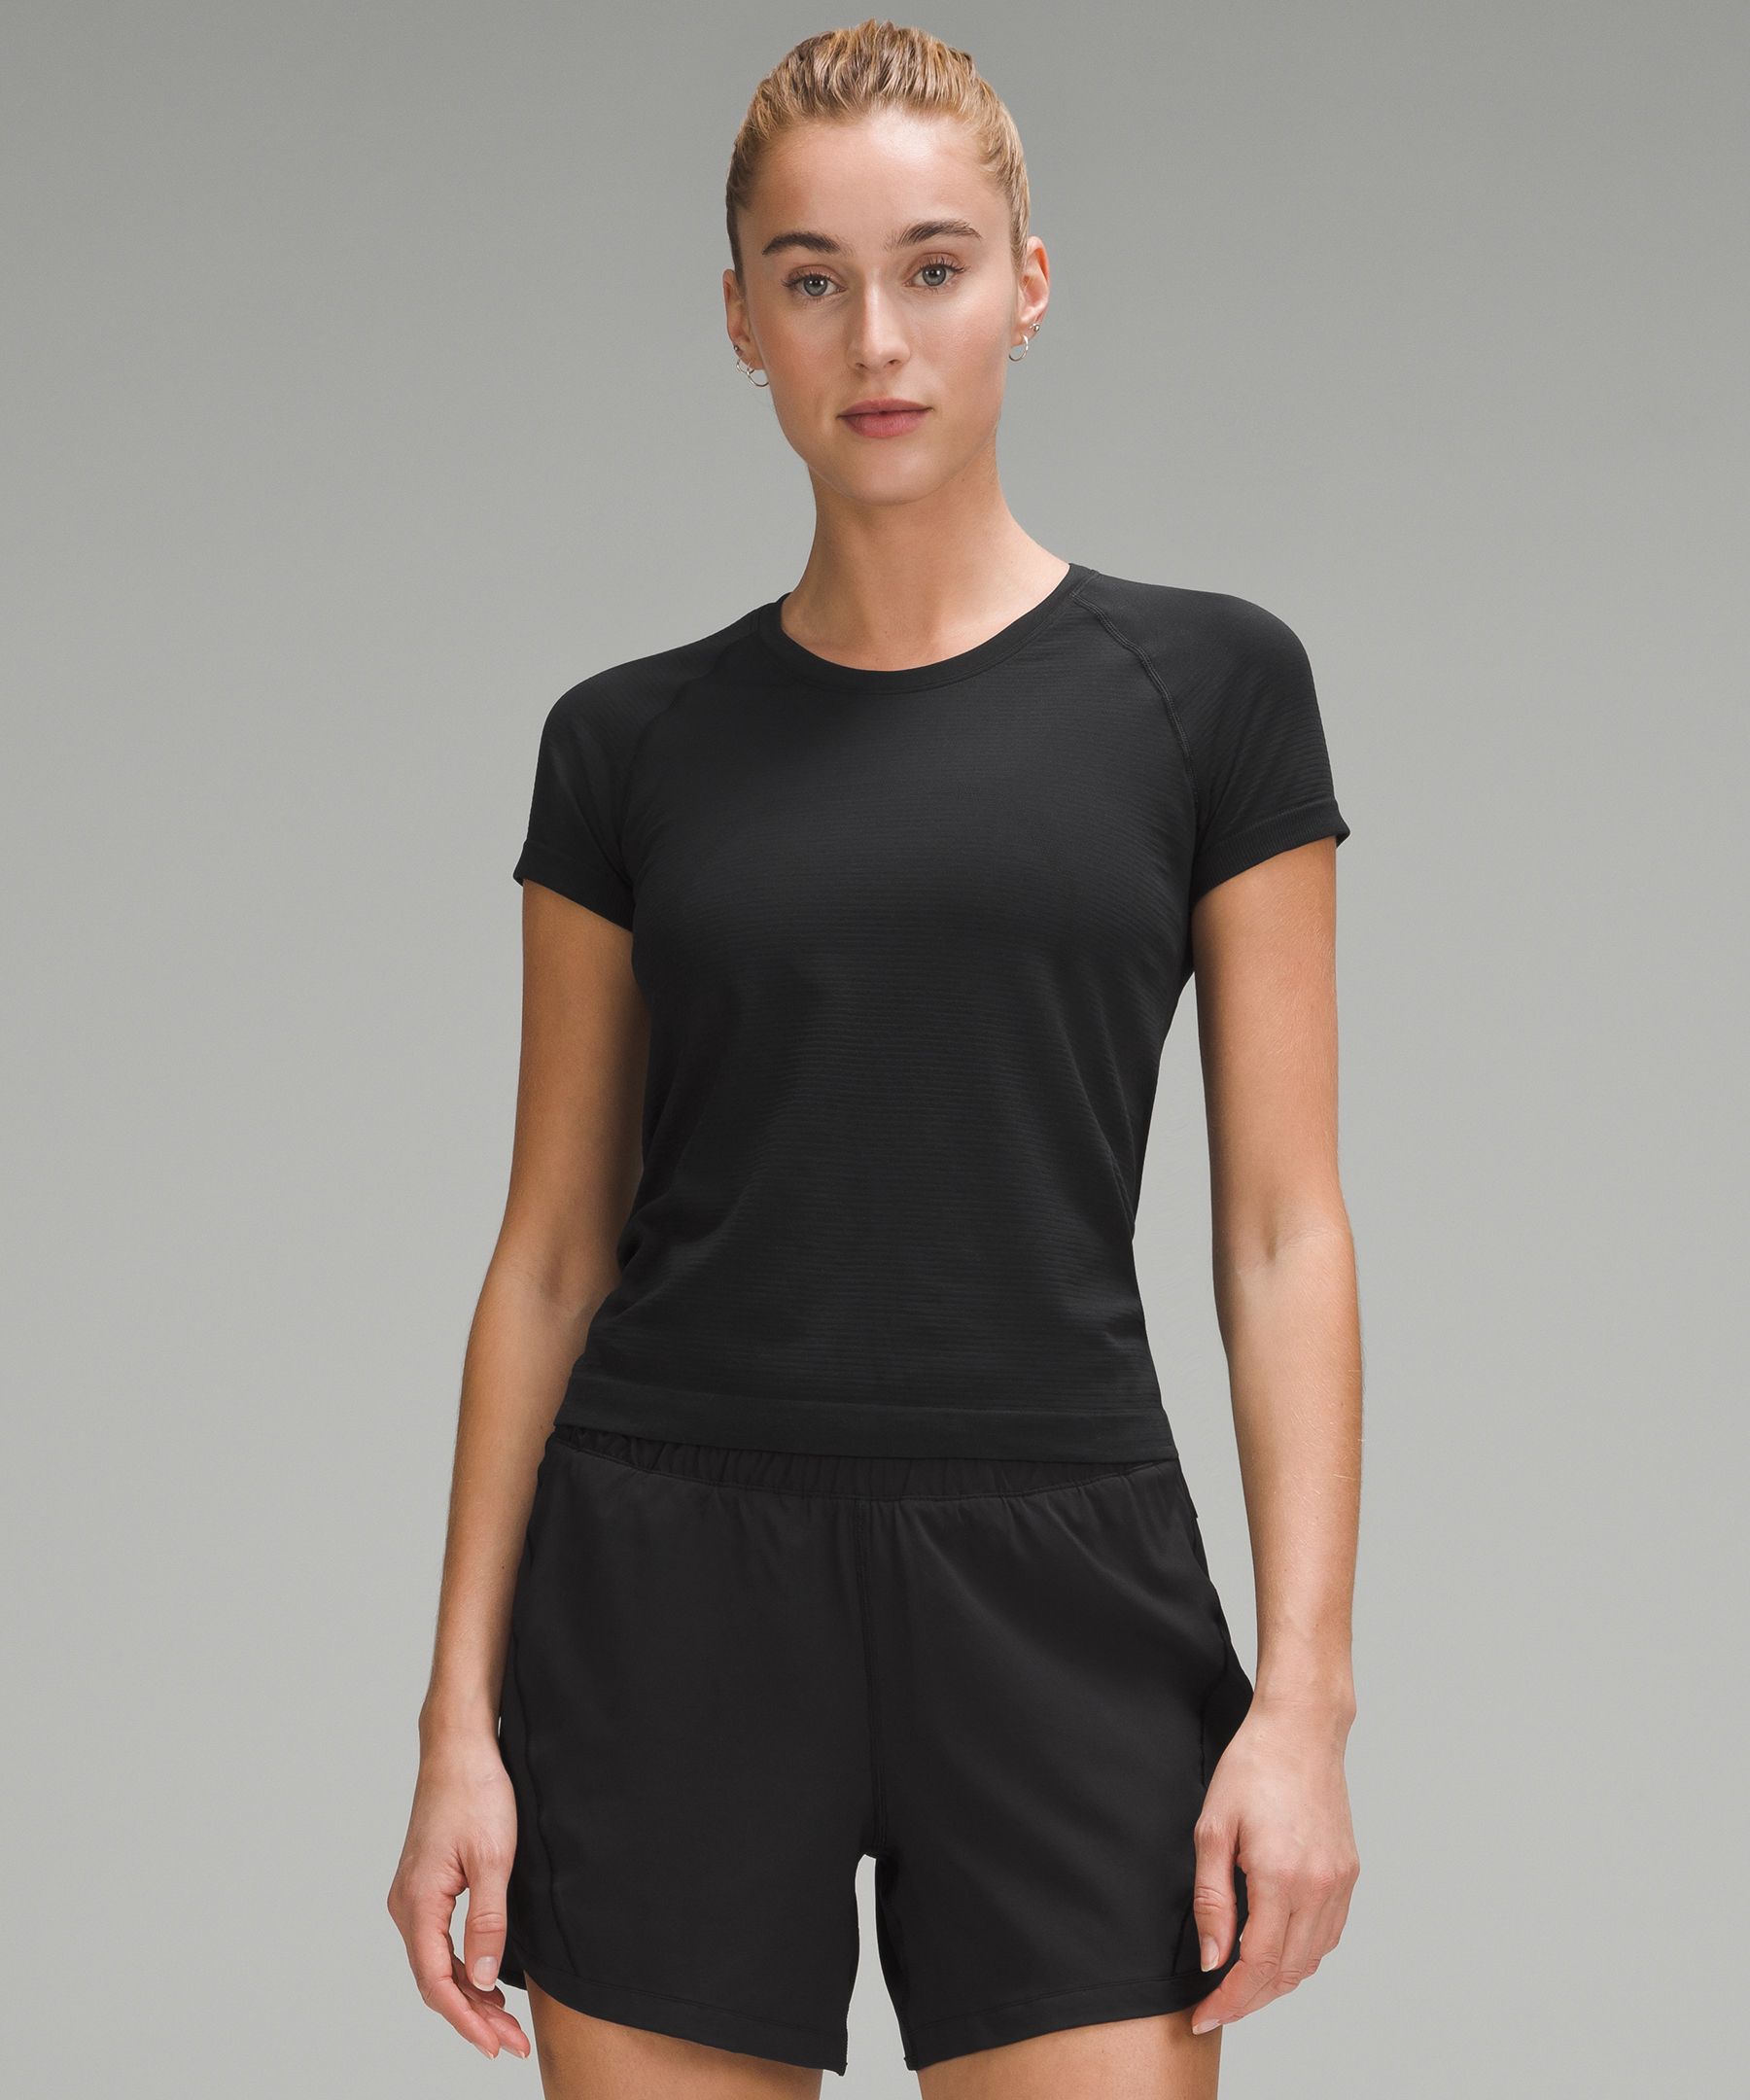 Swiftly Tech Short-Sleeve Shirt 2.0 *Waist Length | Women's Short Sleeve Shirts & Tee's